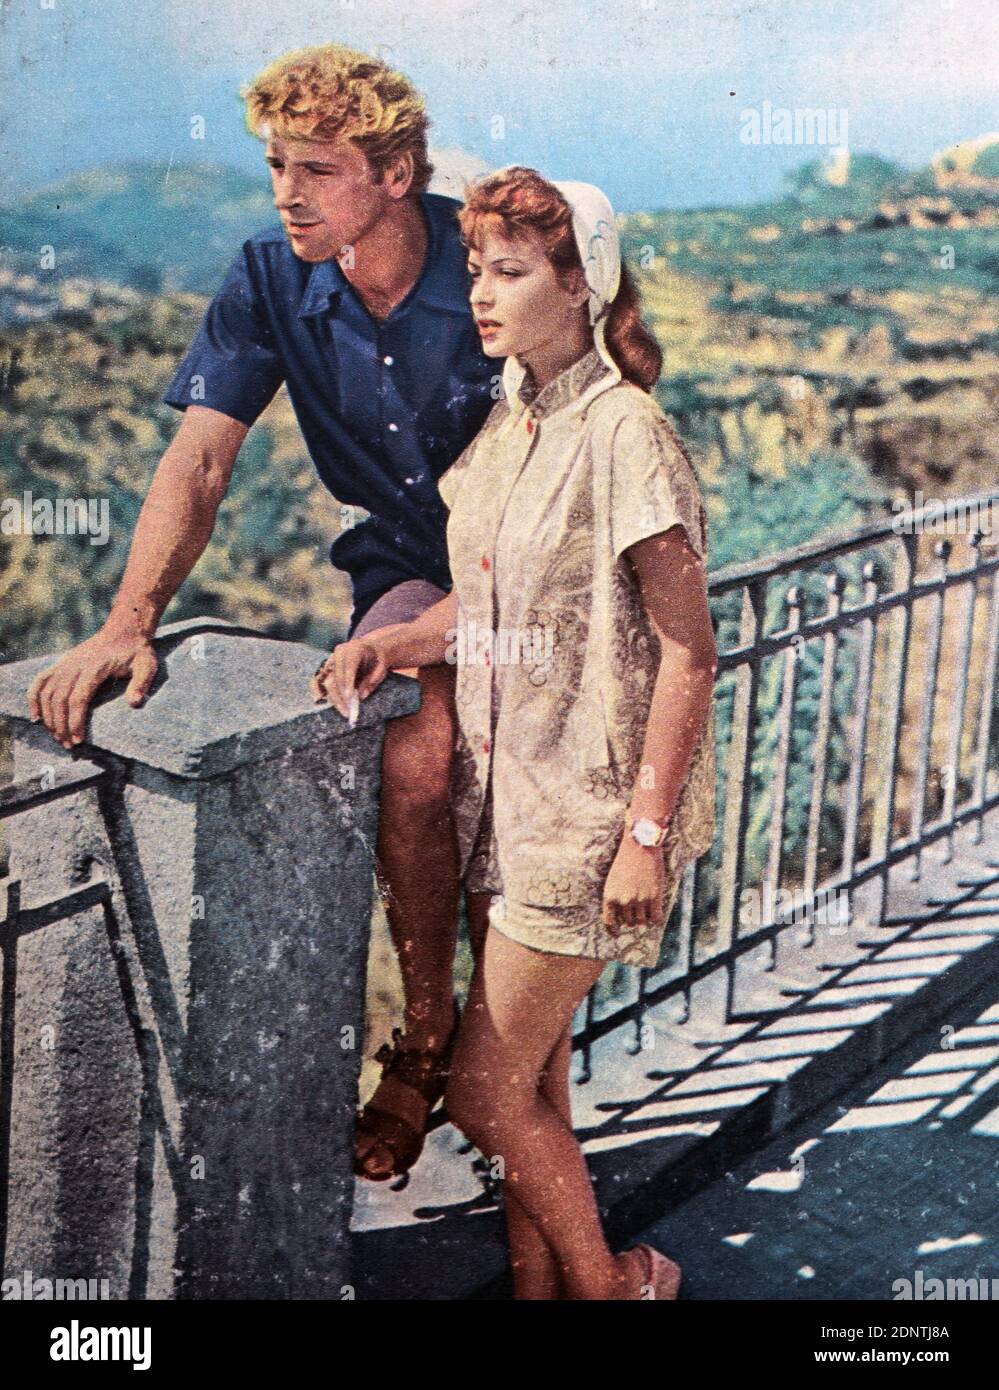 Photographie de Burt Lancaster (1913-1994) et Eva Bartok (1927-1998) explorant l'île d'Ischia. Banque D'Images